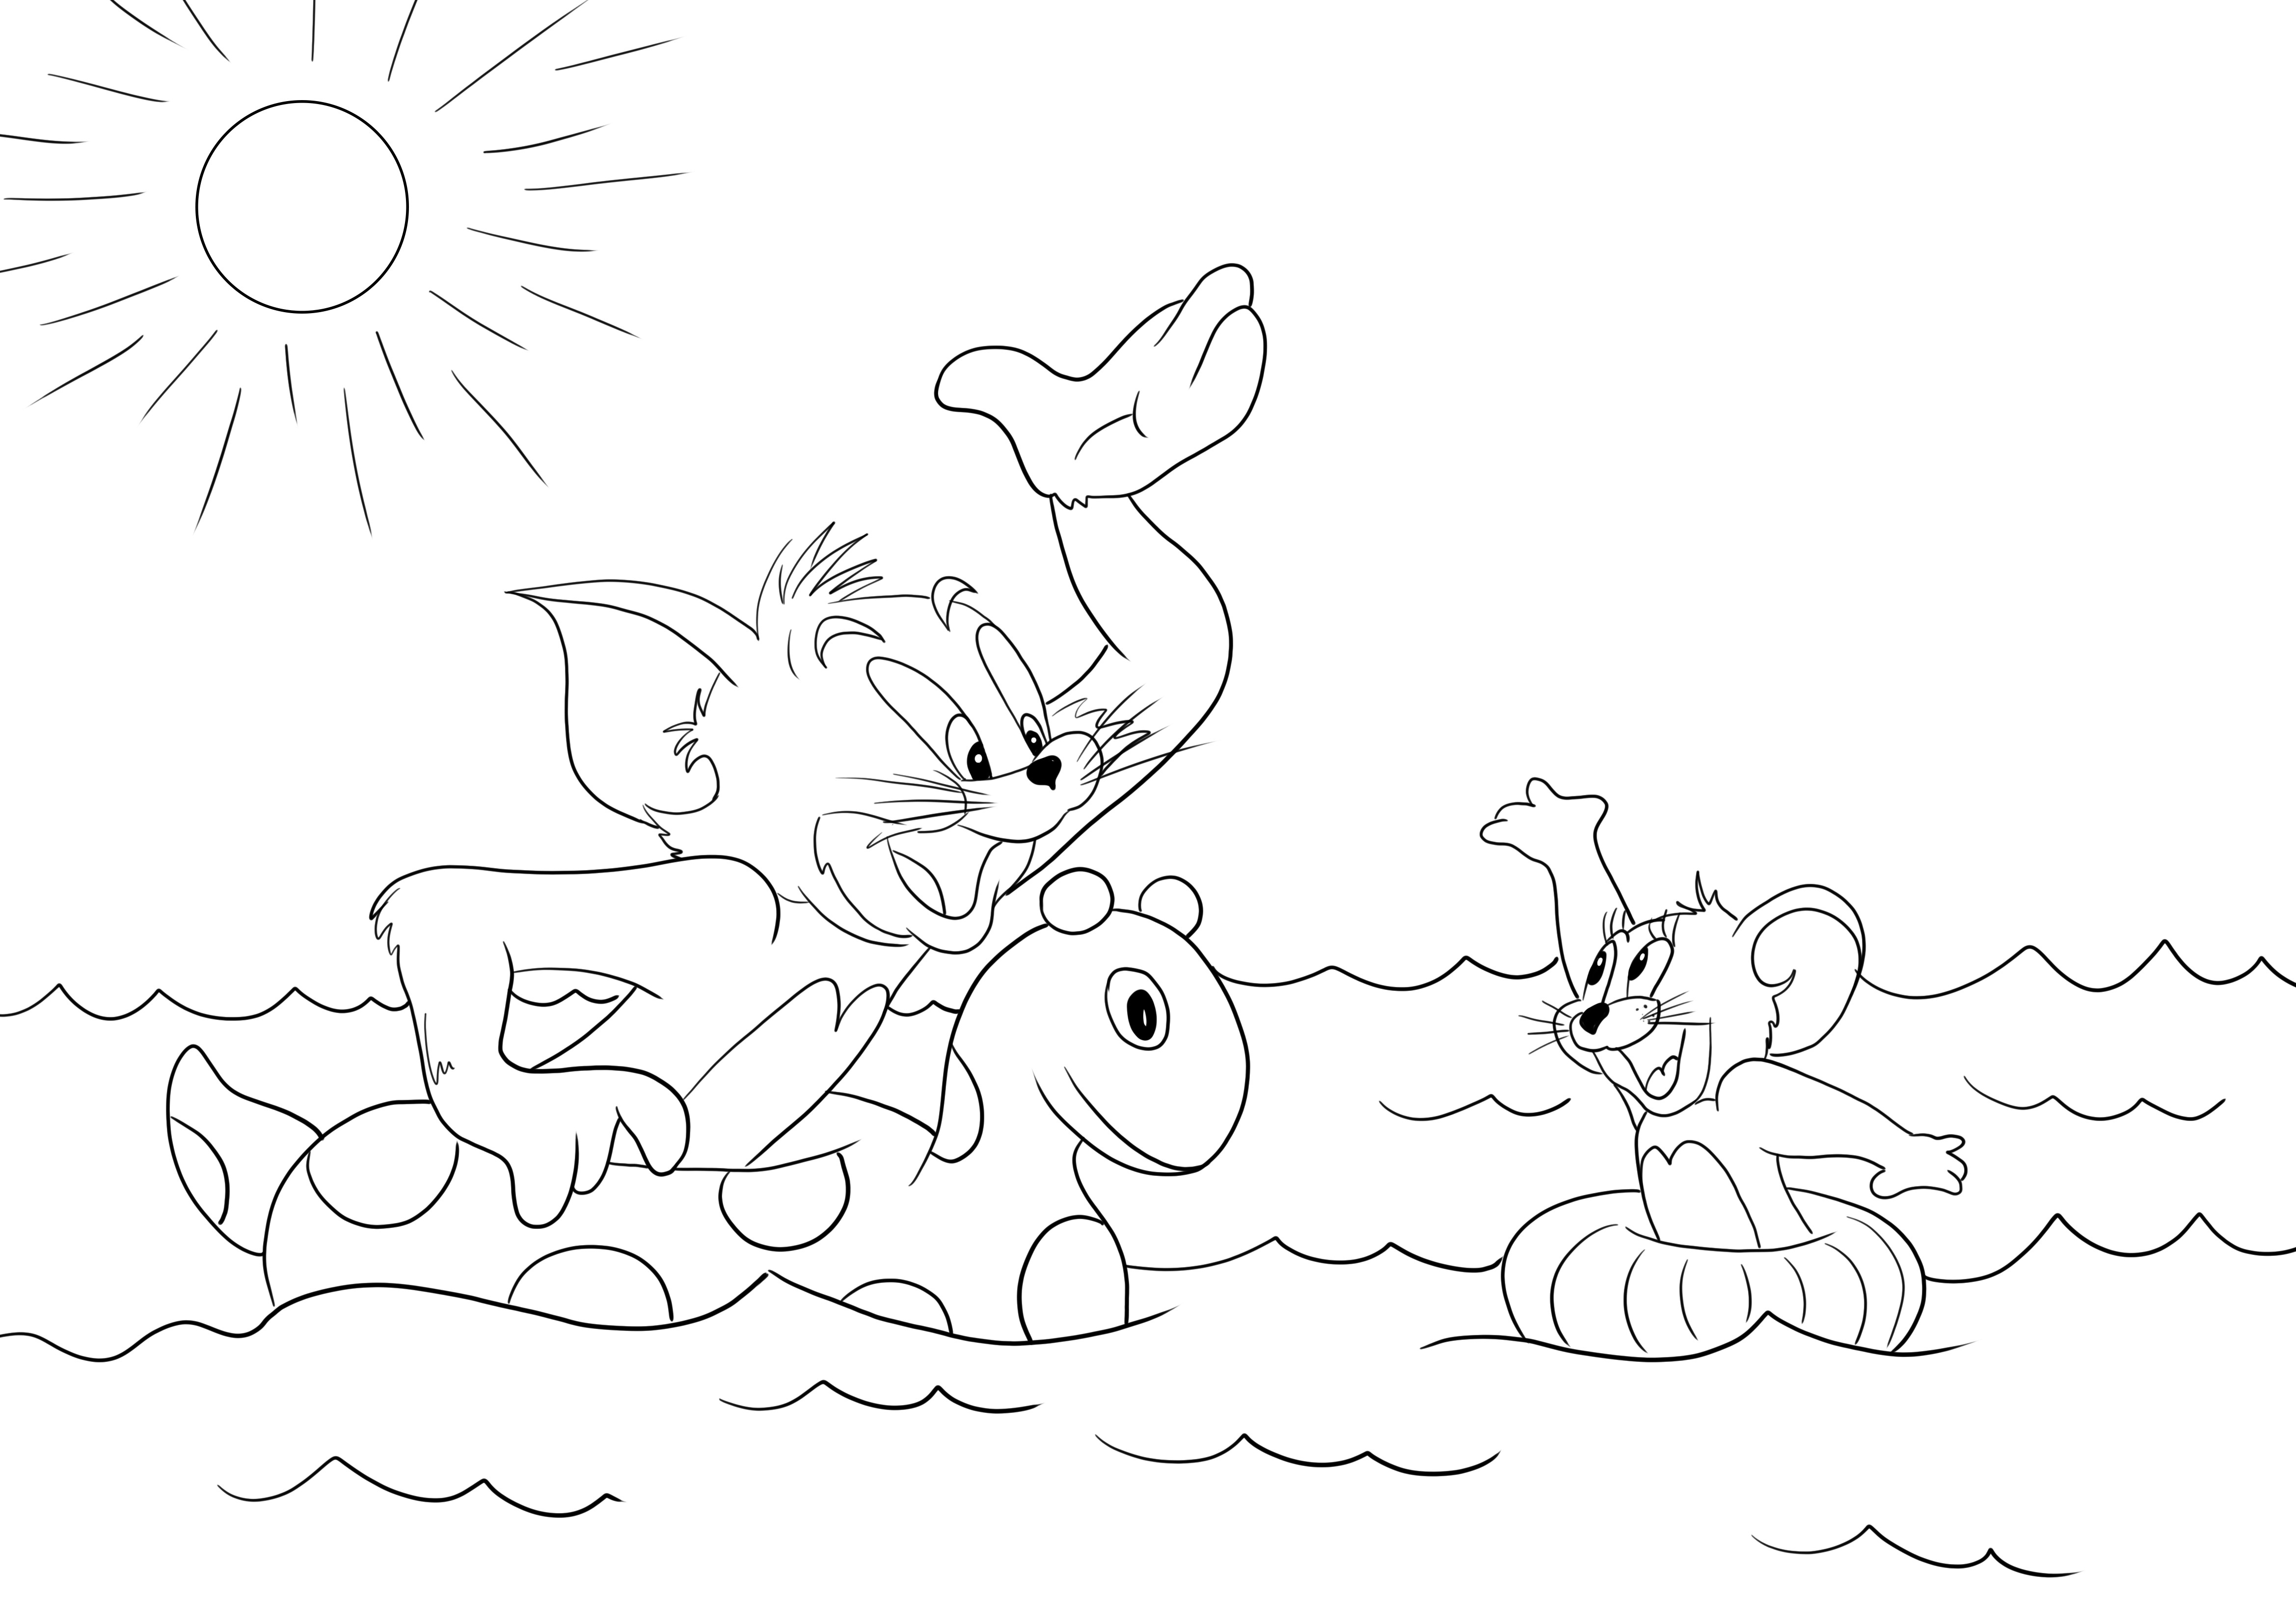 Tom and Jerry berenang mewarnai dan mencetak gambar gratis untuk anak-anak